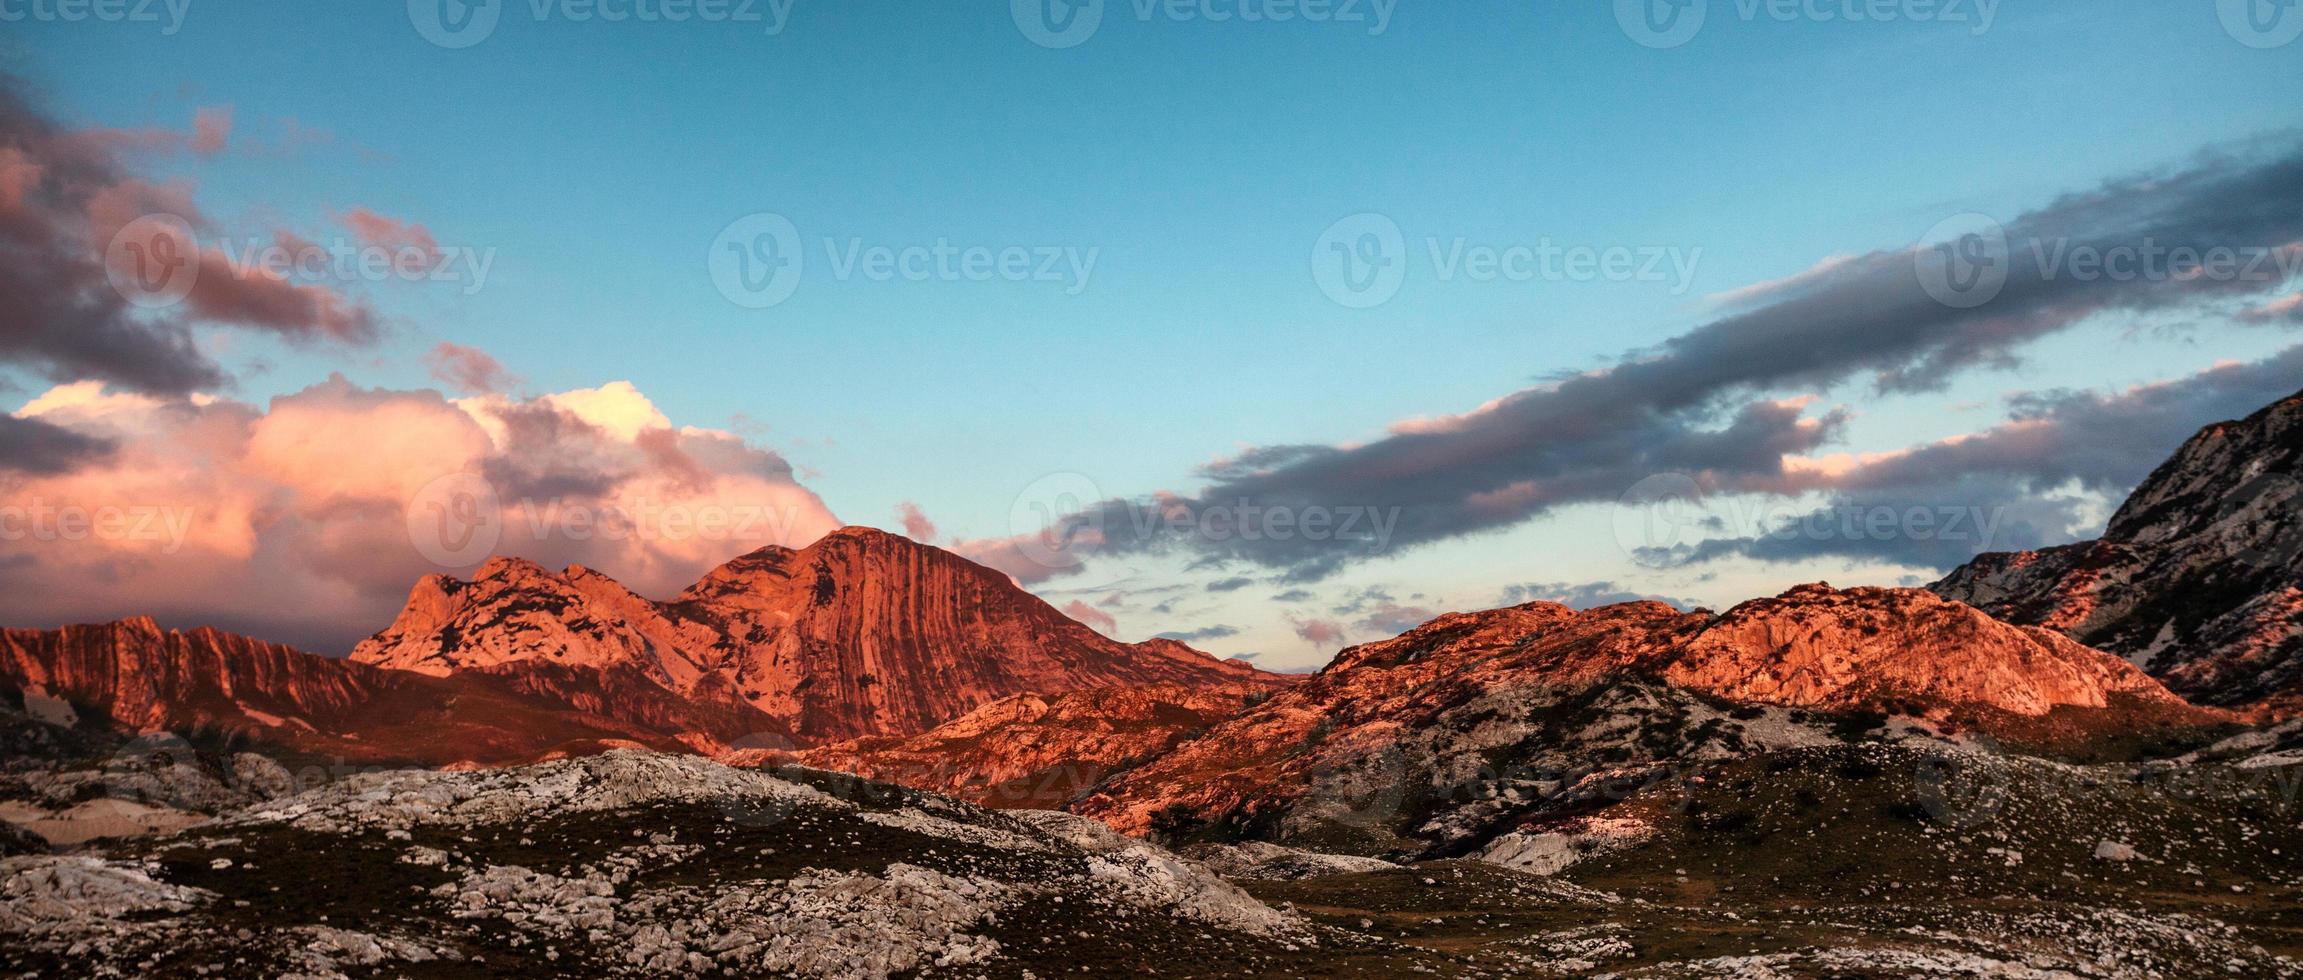 montagne rocciose della cassetta delle lettere del montenegro foto